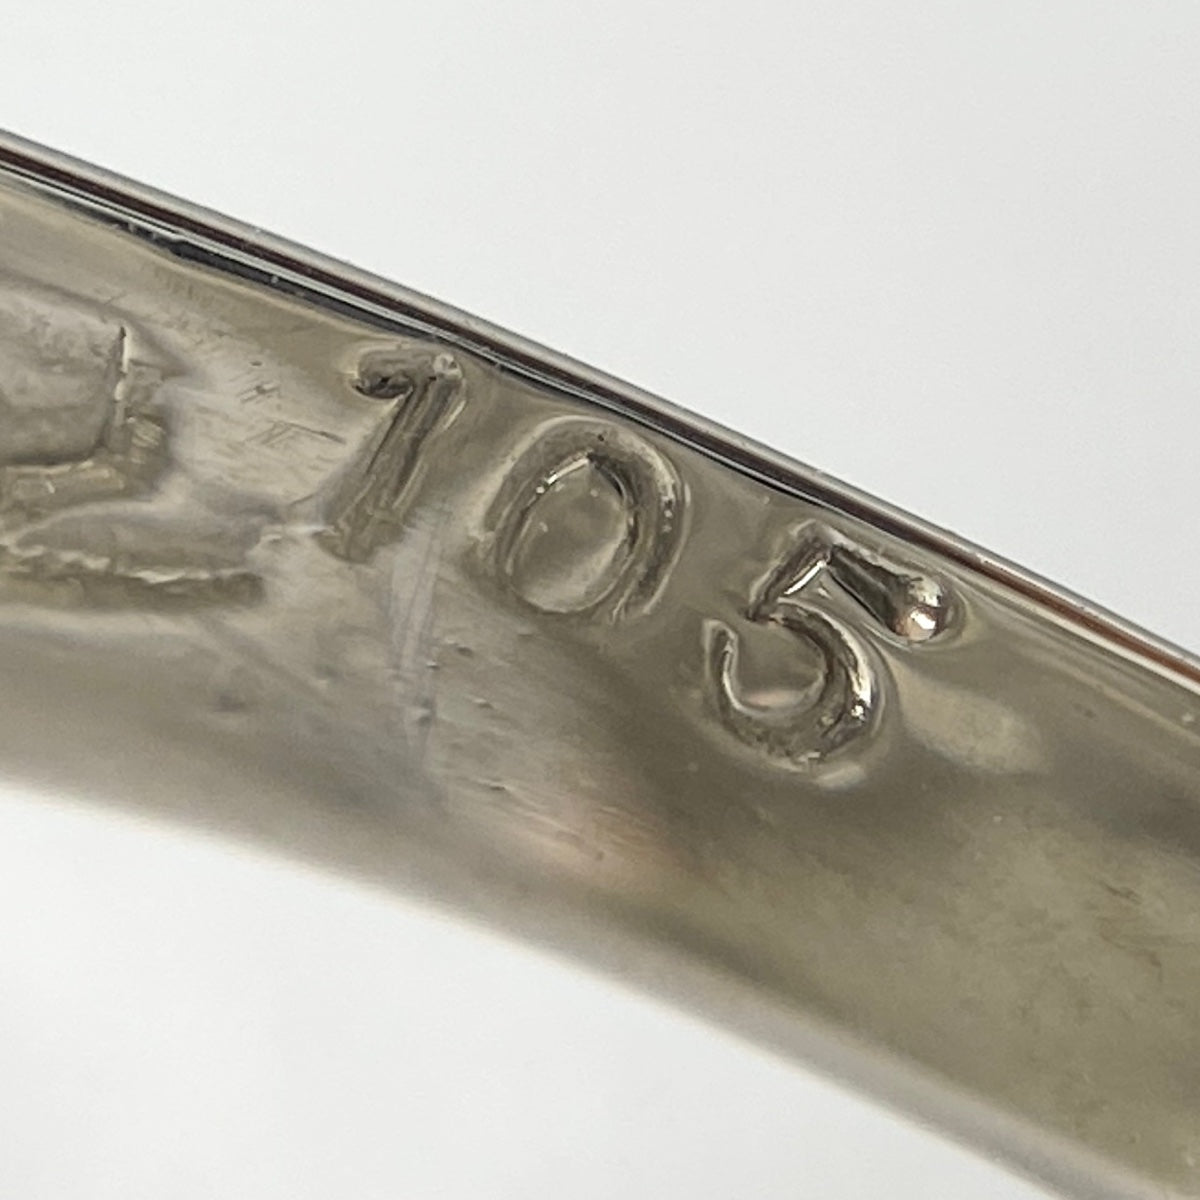 メレダイヤ デザインリング プラチナ 指輪 リング 11.5号 Pt900 ダイヤモンド レディース 【中古】 ラッピング可